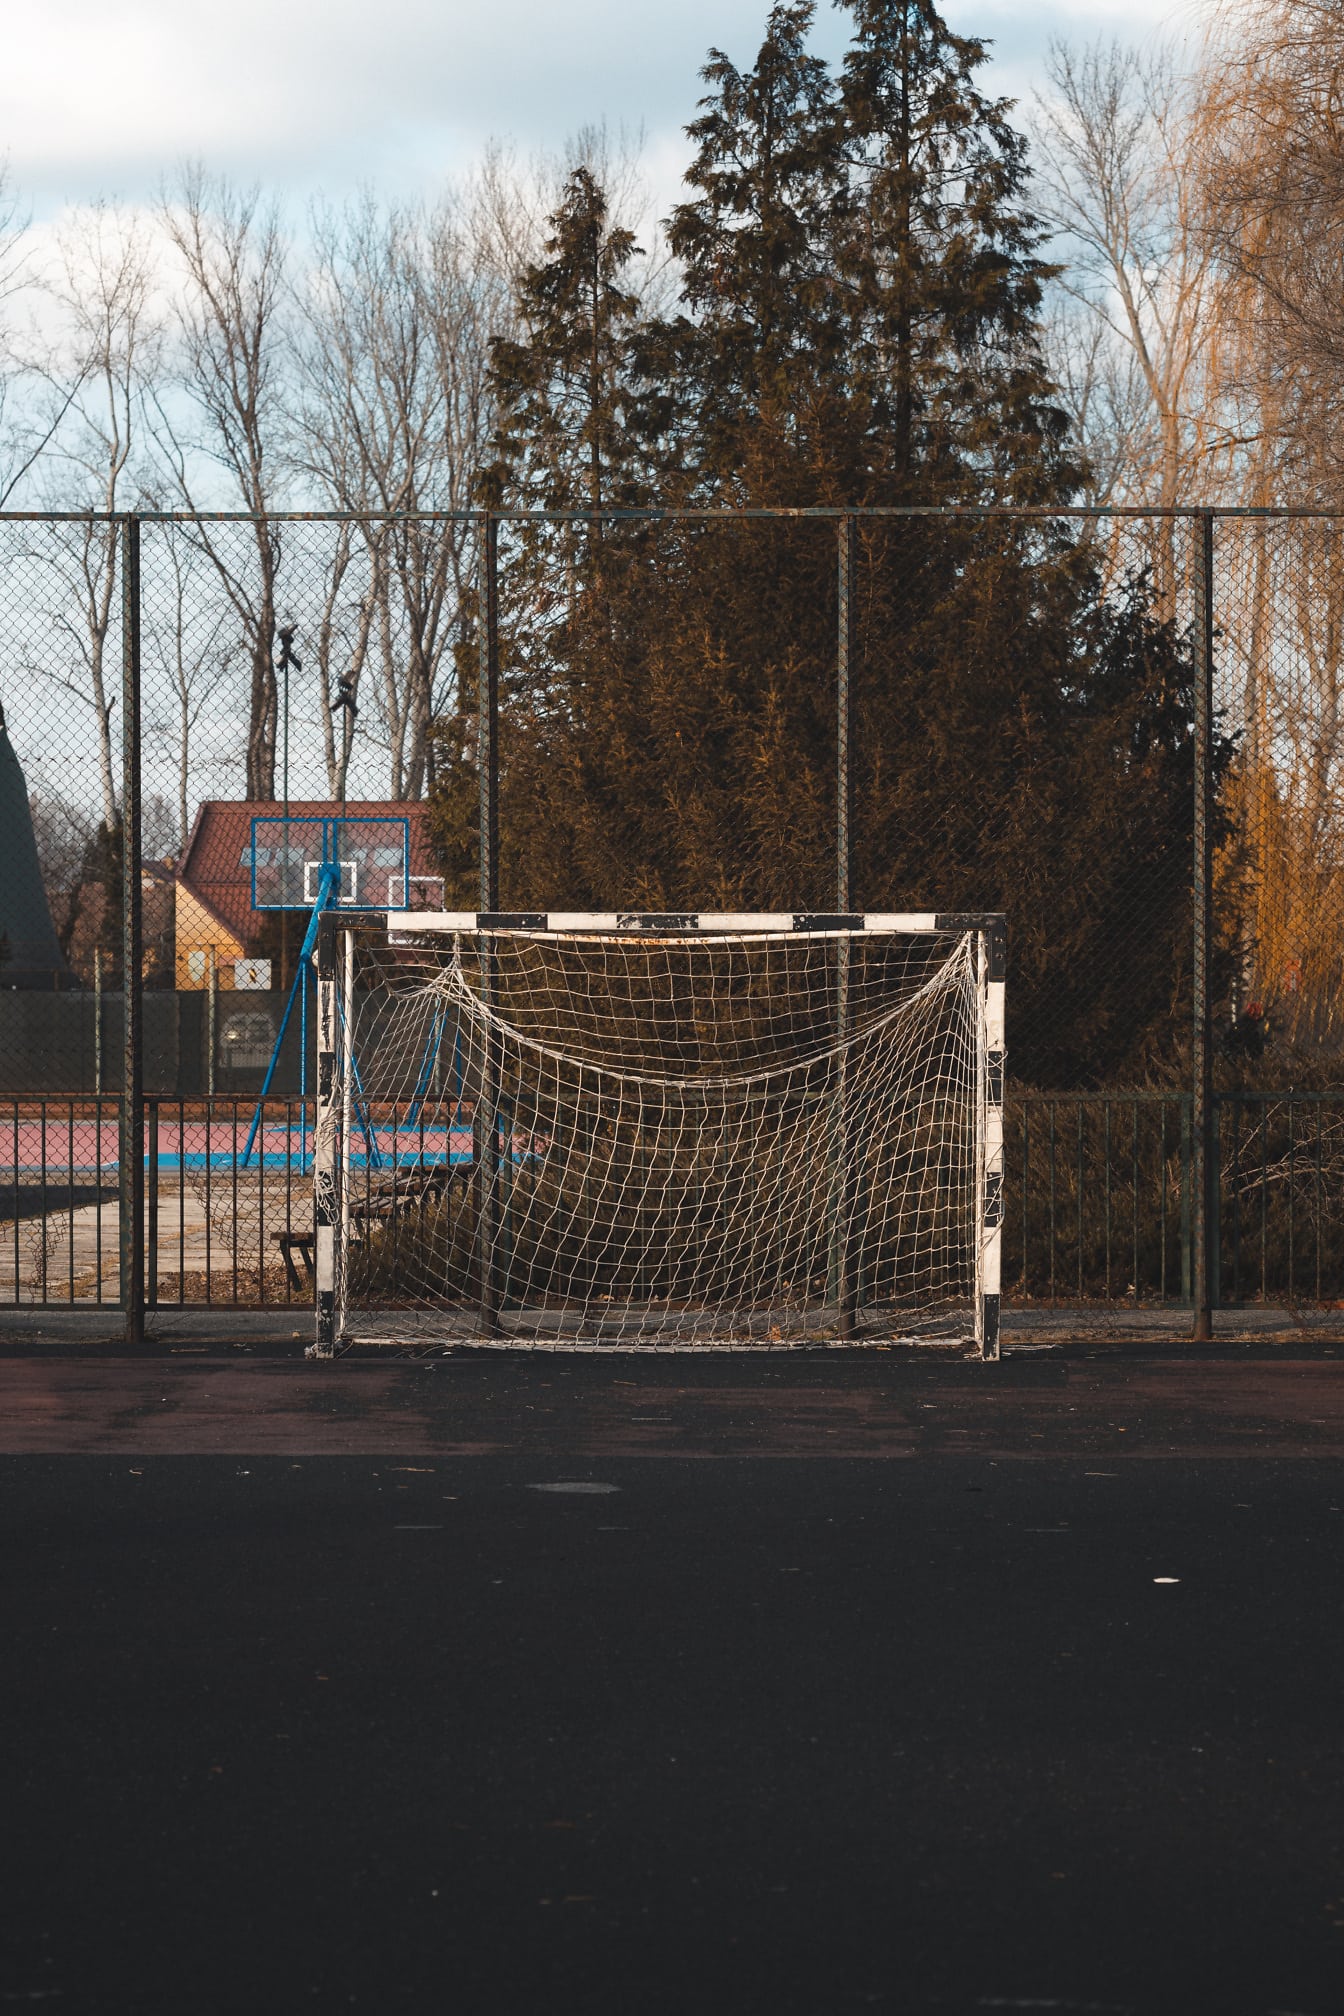 Prázdna futbalová bránka s basketbalovým ihriskom v pozadí